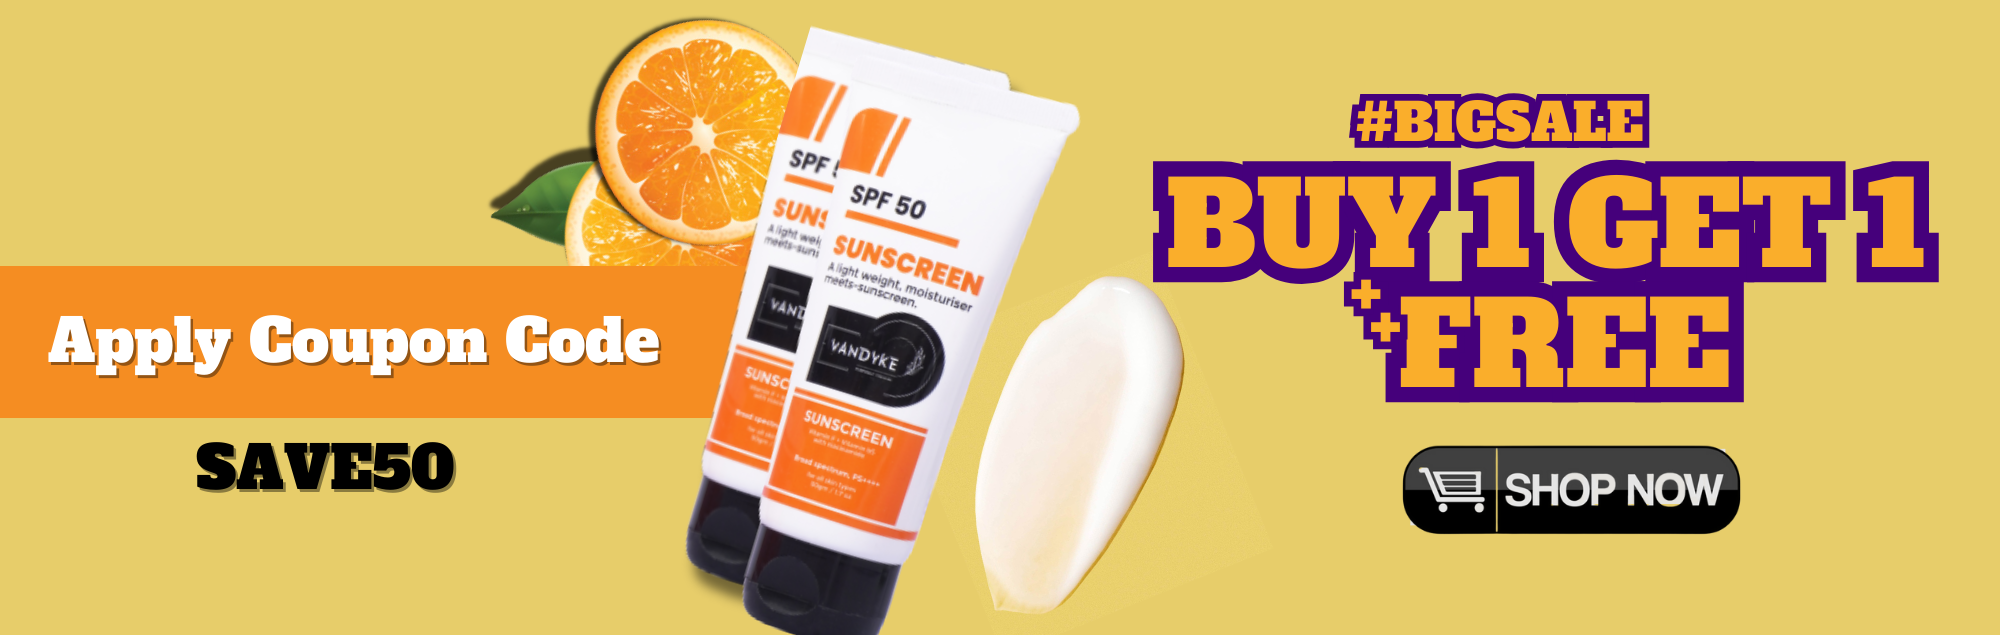 sunscreen - Vandyke coupon code